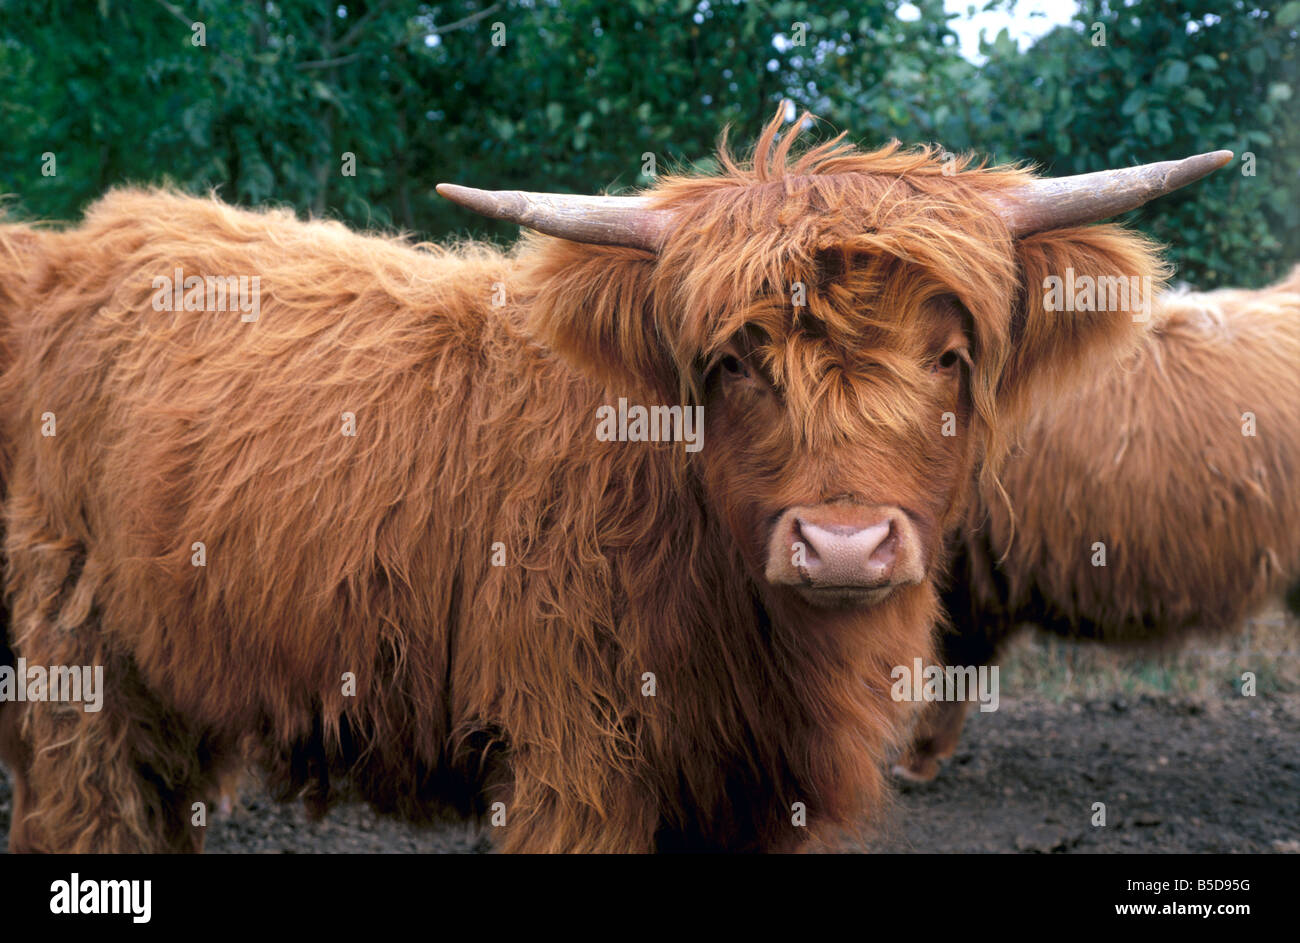 Highland cattle, Scotland, Europe Stock Photo